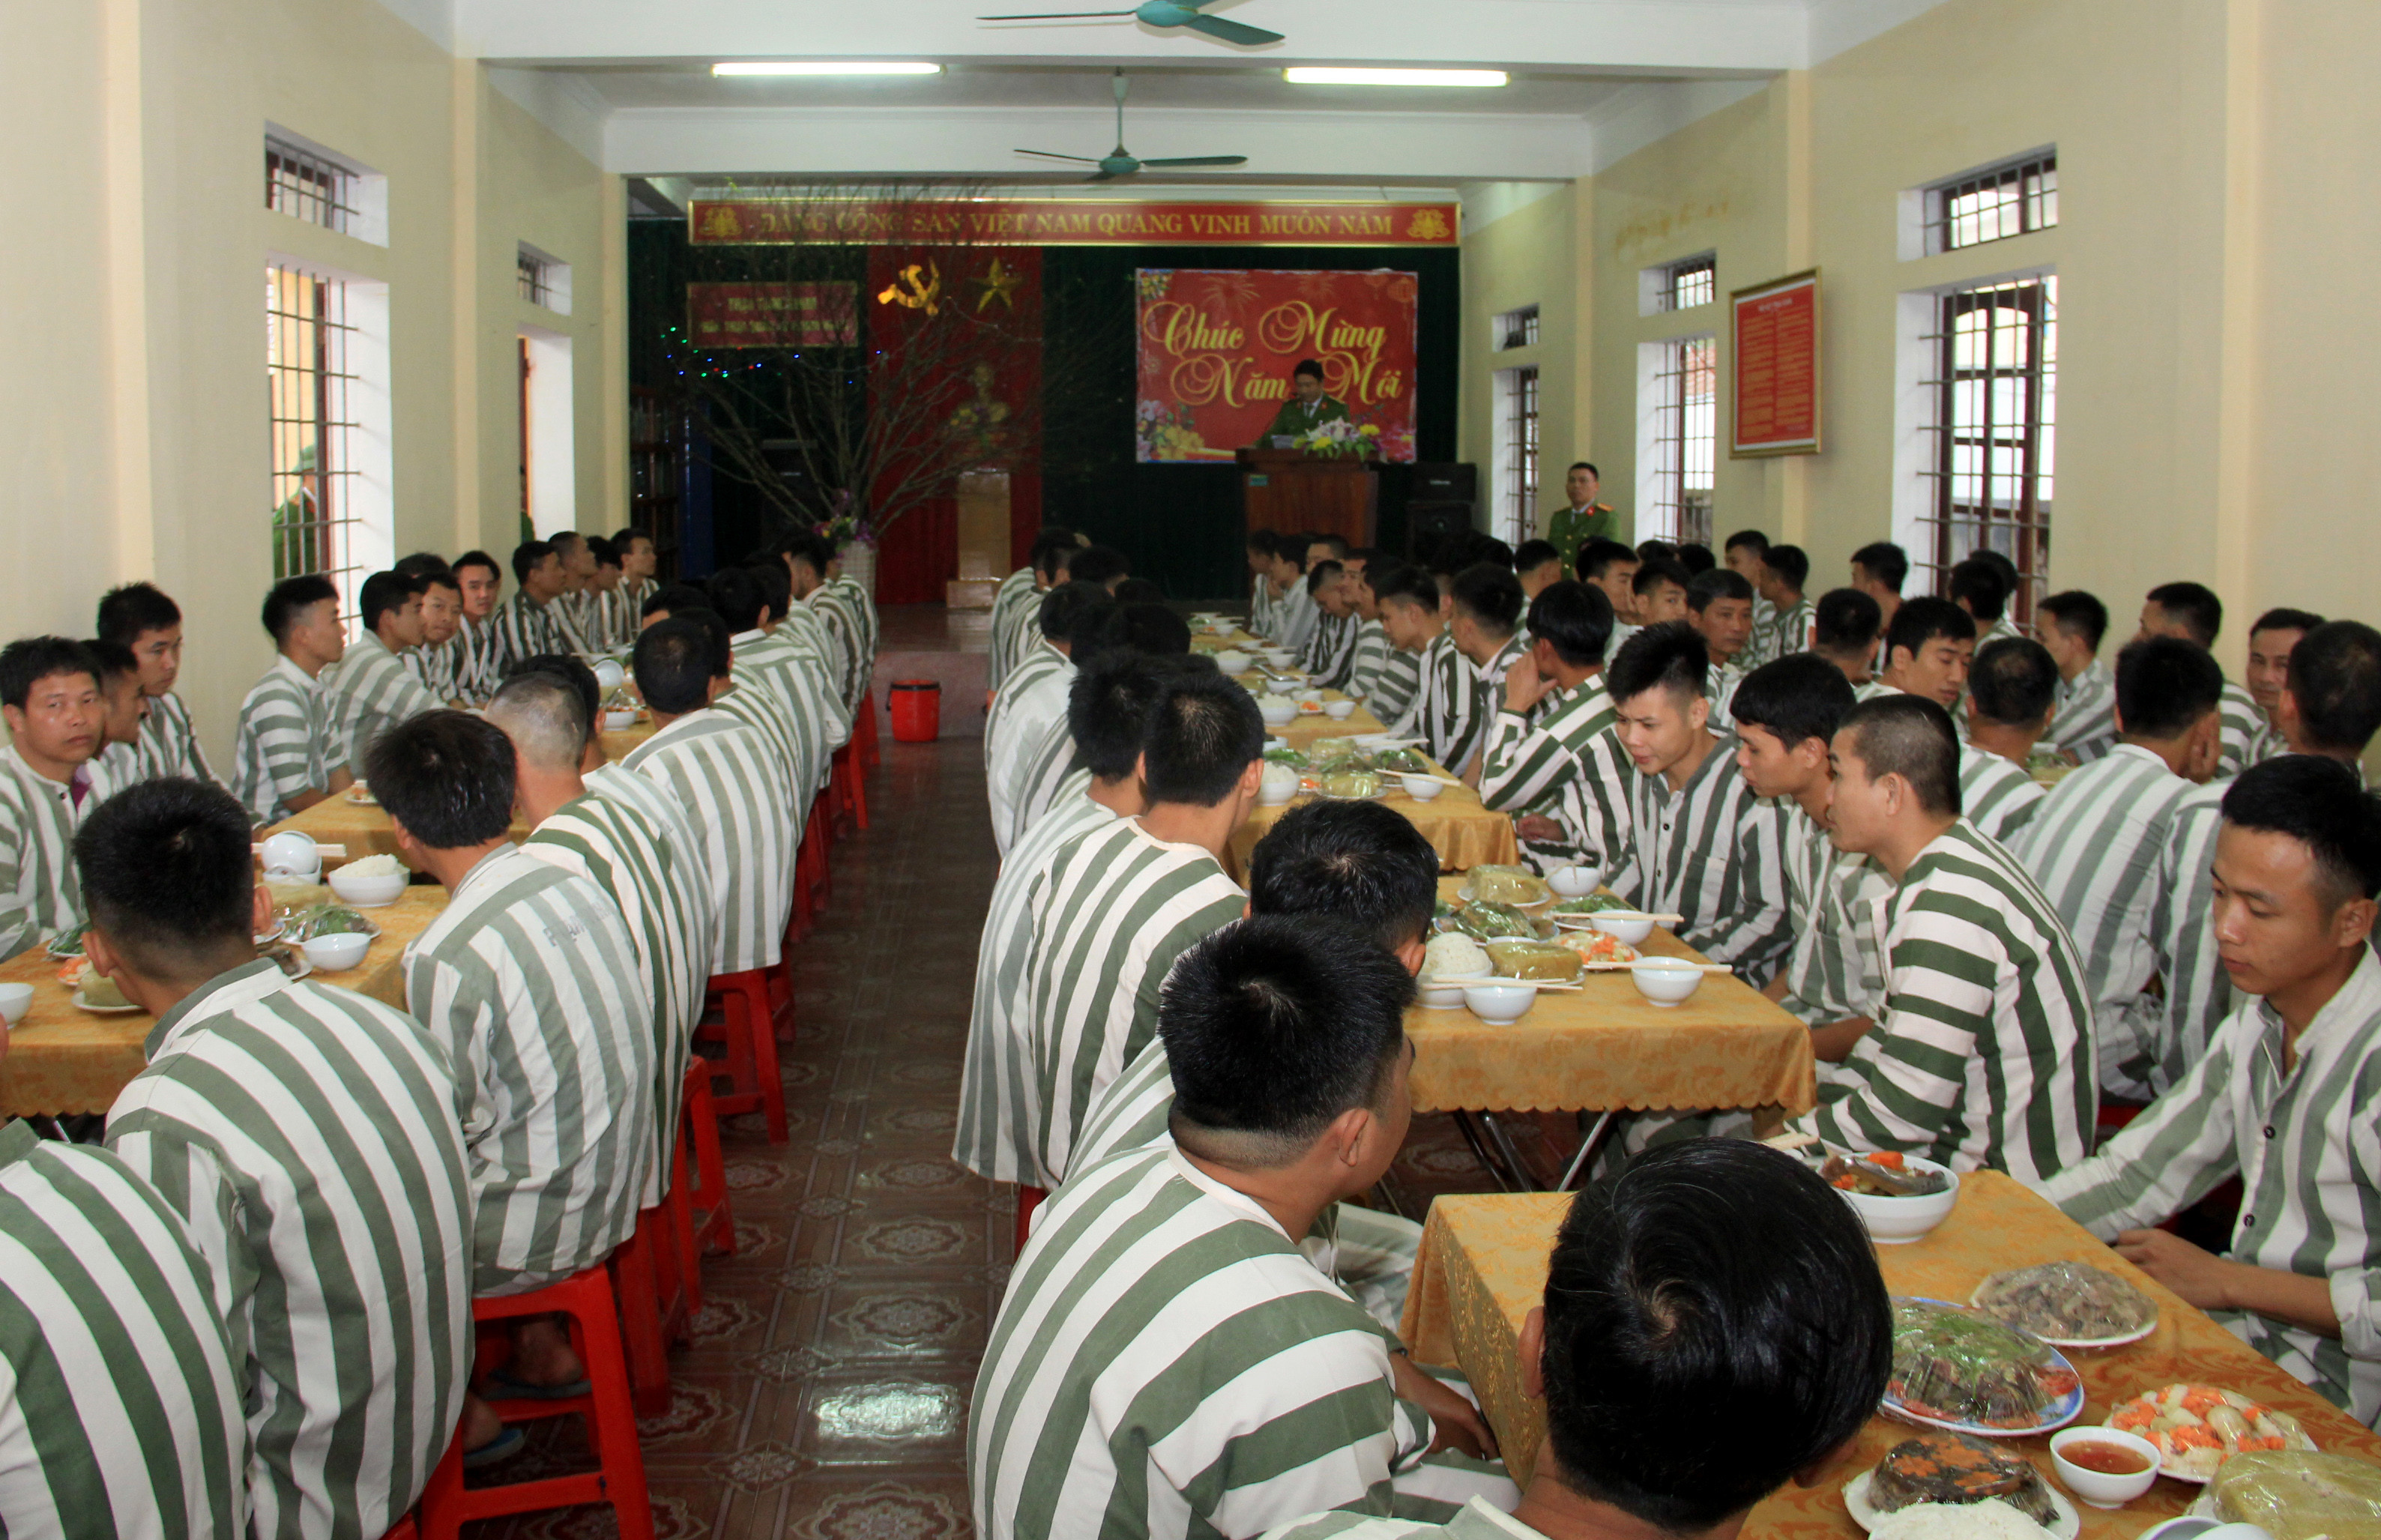 Đã thành thông lệ, cứ vào khoảng 24 tháng Chạp hàng năm, Trại tạm giam Công an tỉnh Nghệ An lại tổ chức bữa cơm tất niên sớm dành cho phạm nhân đang thi hành án tại đây. Ảnh: Phạm Bằng